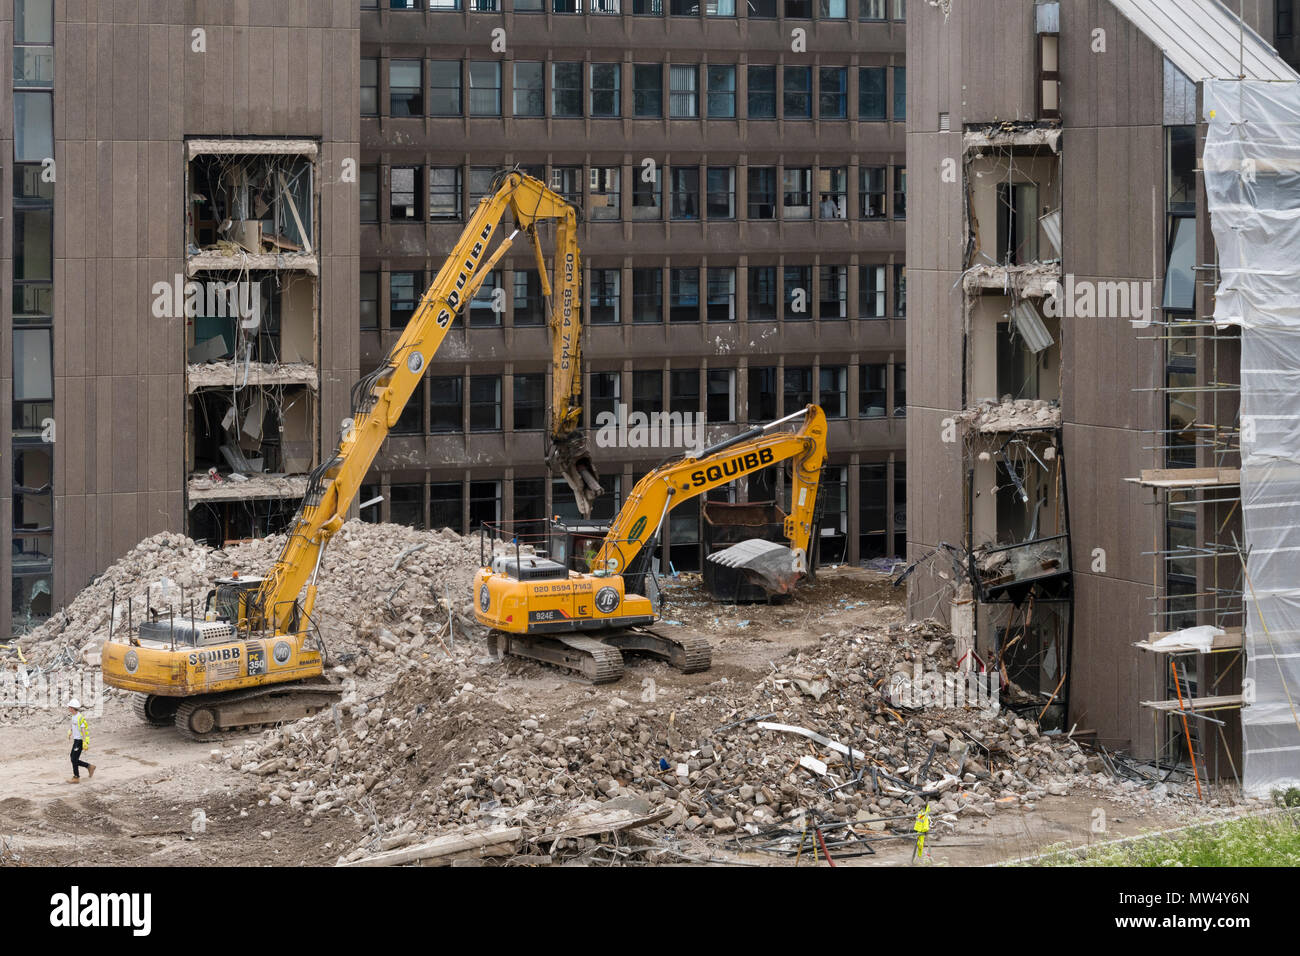 Vista alta del sito di demolizione con macerie, macchinari pesanti (escavatori) che lavorano e demoliscono edifici di uffici vuoti - Hudson House, York, Inghilterra, Regno Unito. Foto Stock